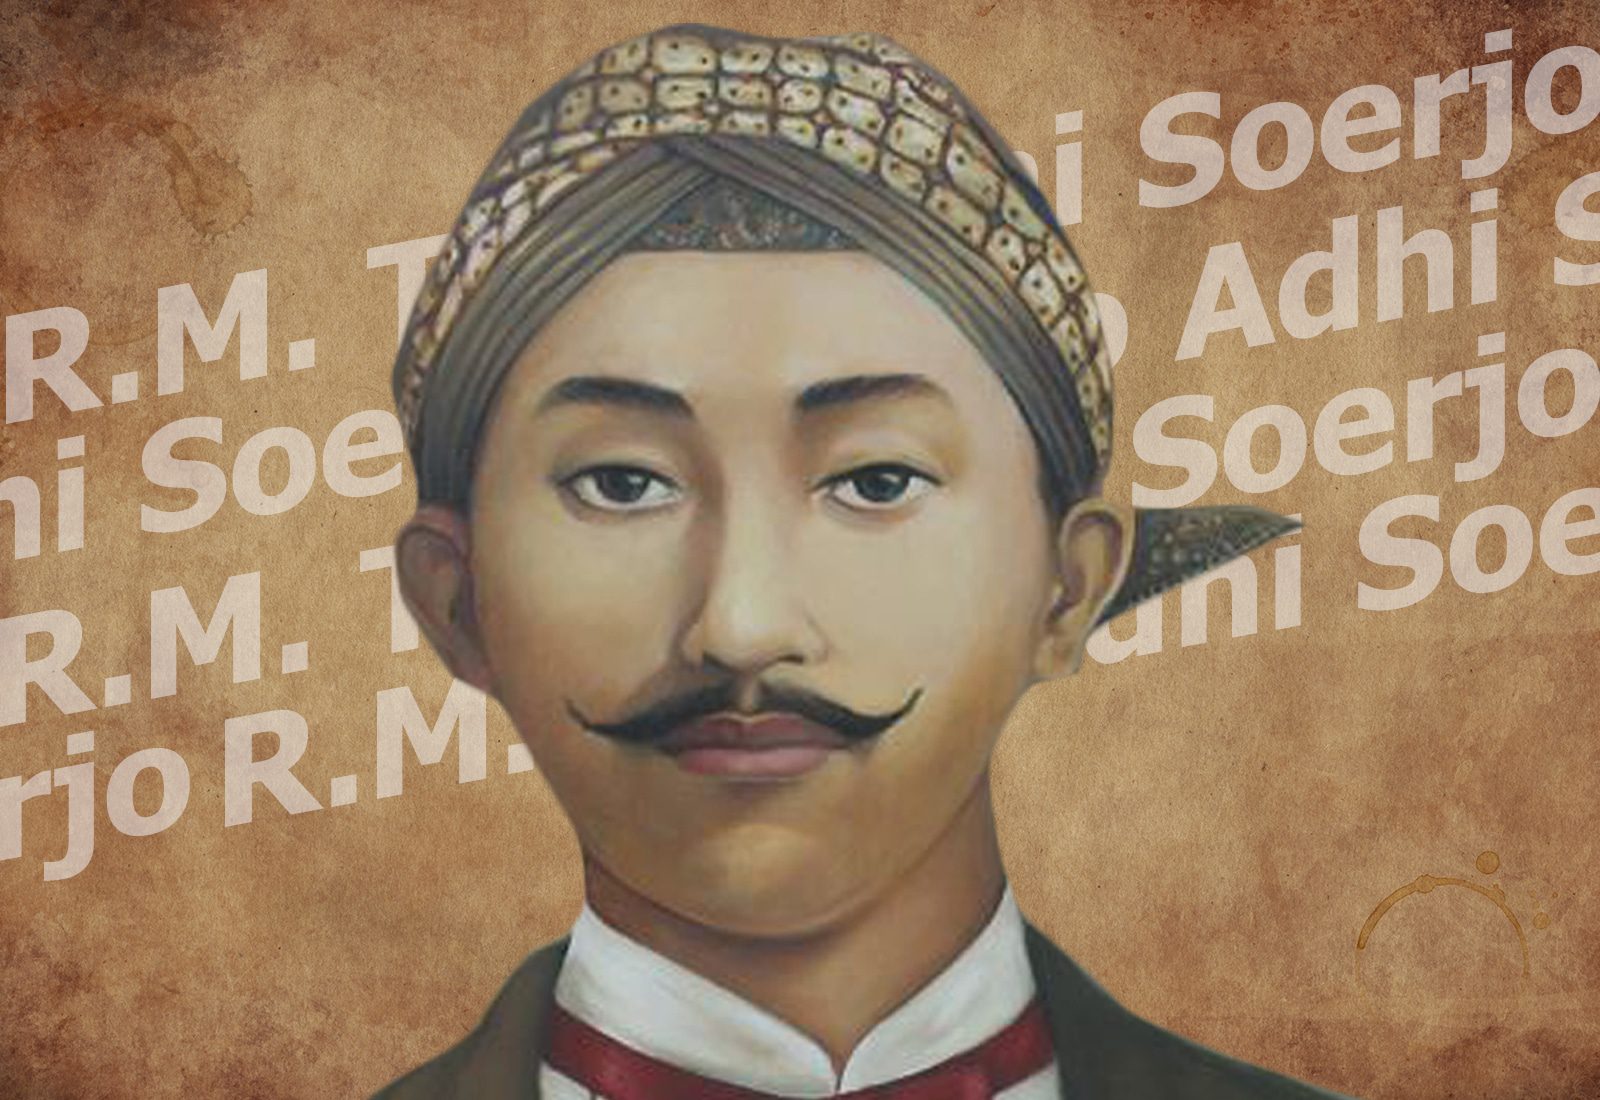 Biografi R.M. Tirto Adhi Soerjo 1880, Sang Pelopor Gerakan dan Pers Nasional